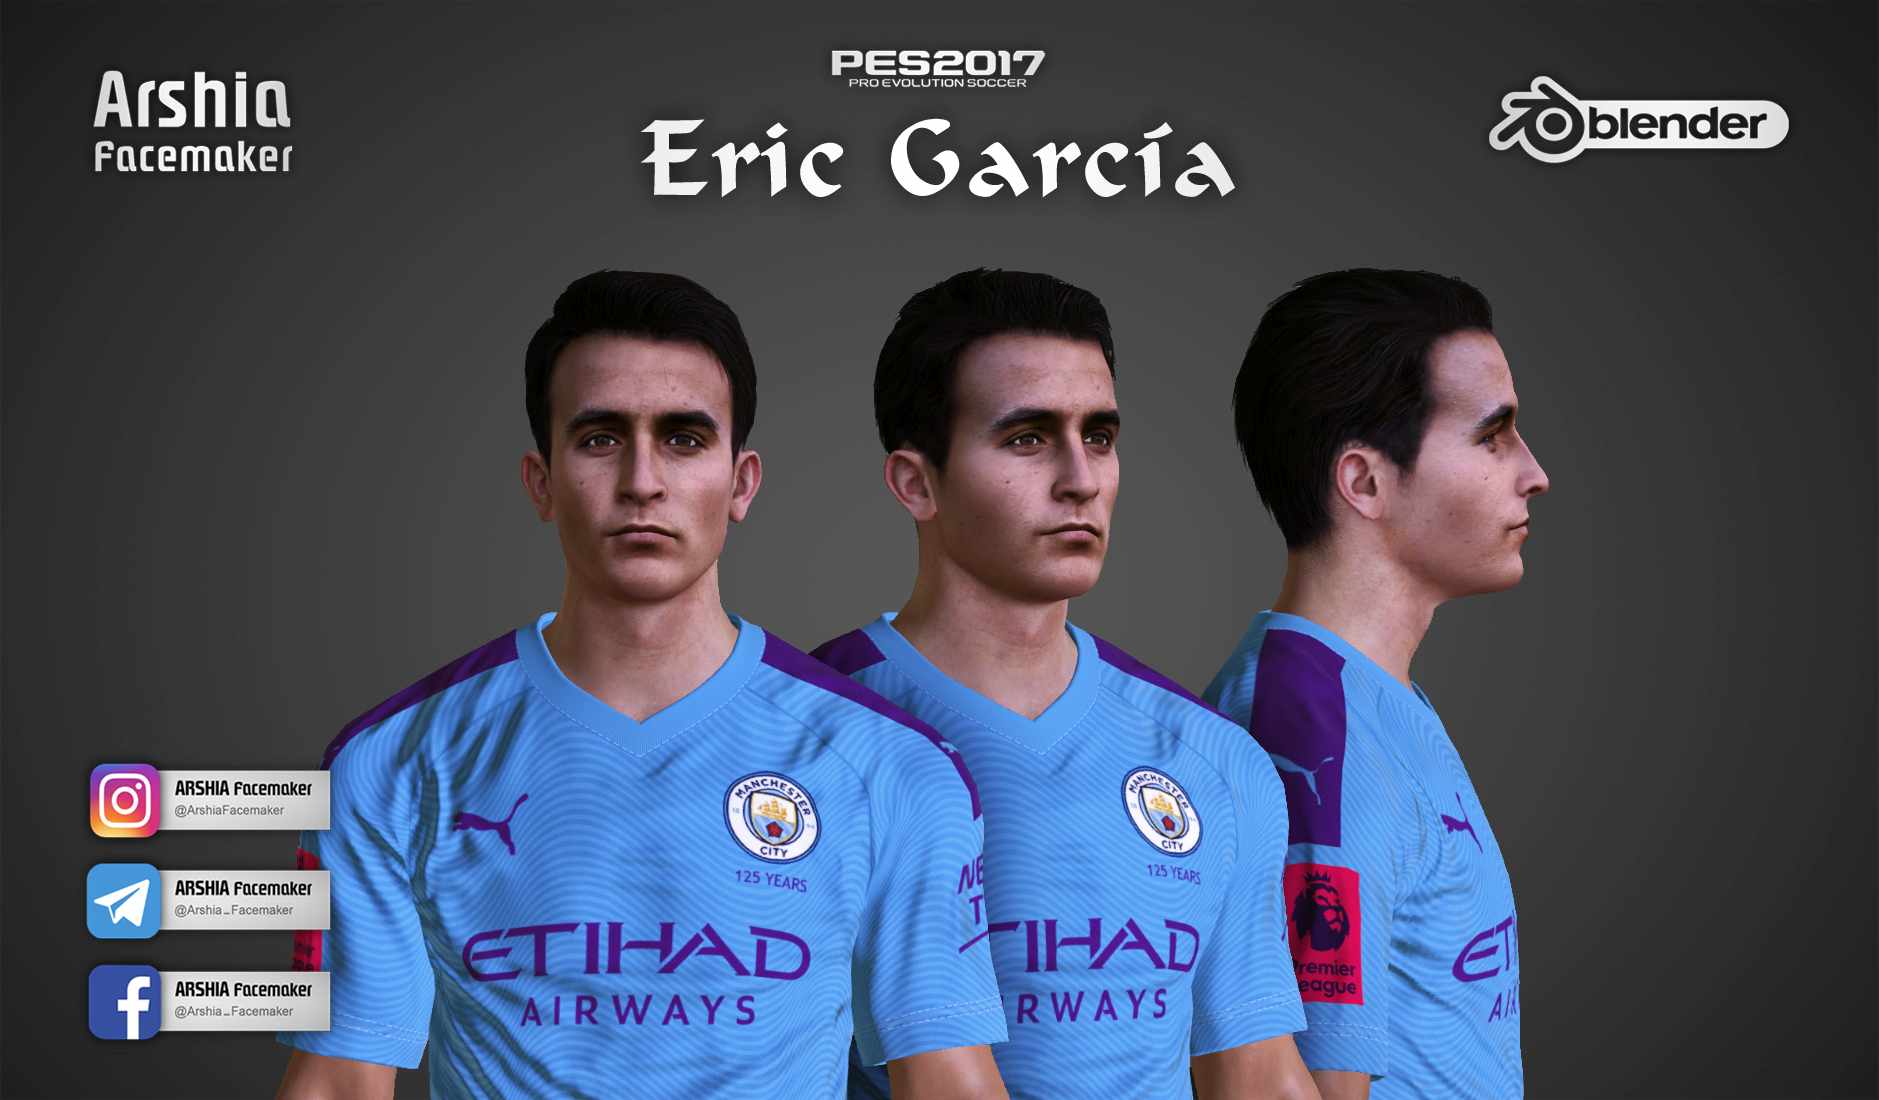 PES 2017 Eric García Face by Arshia Facemaker